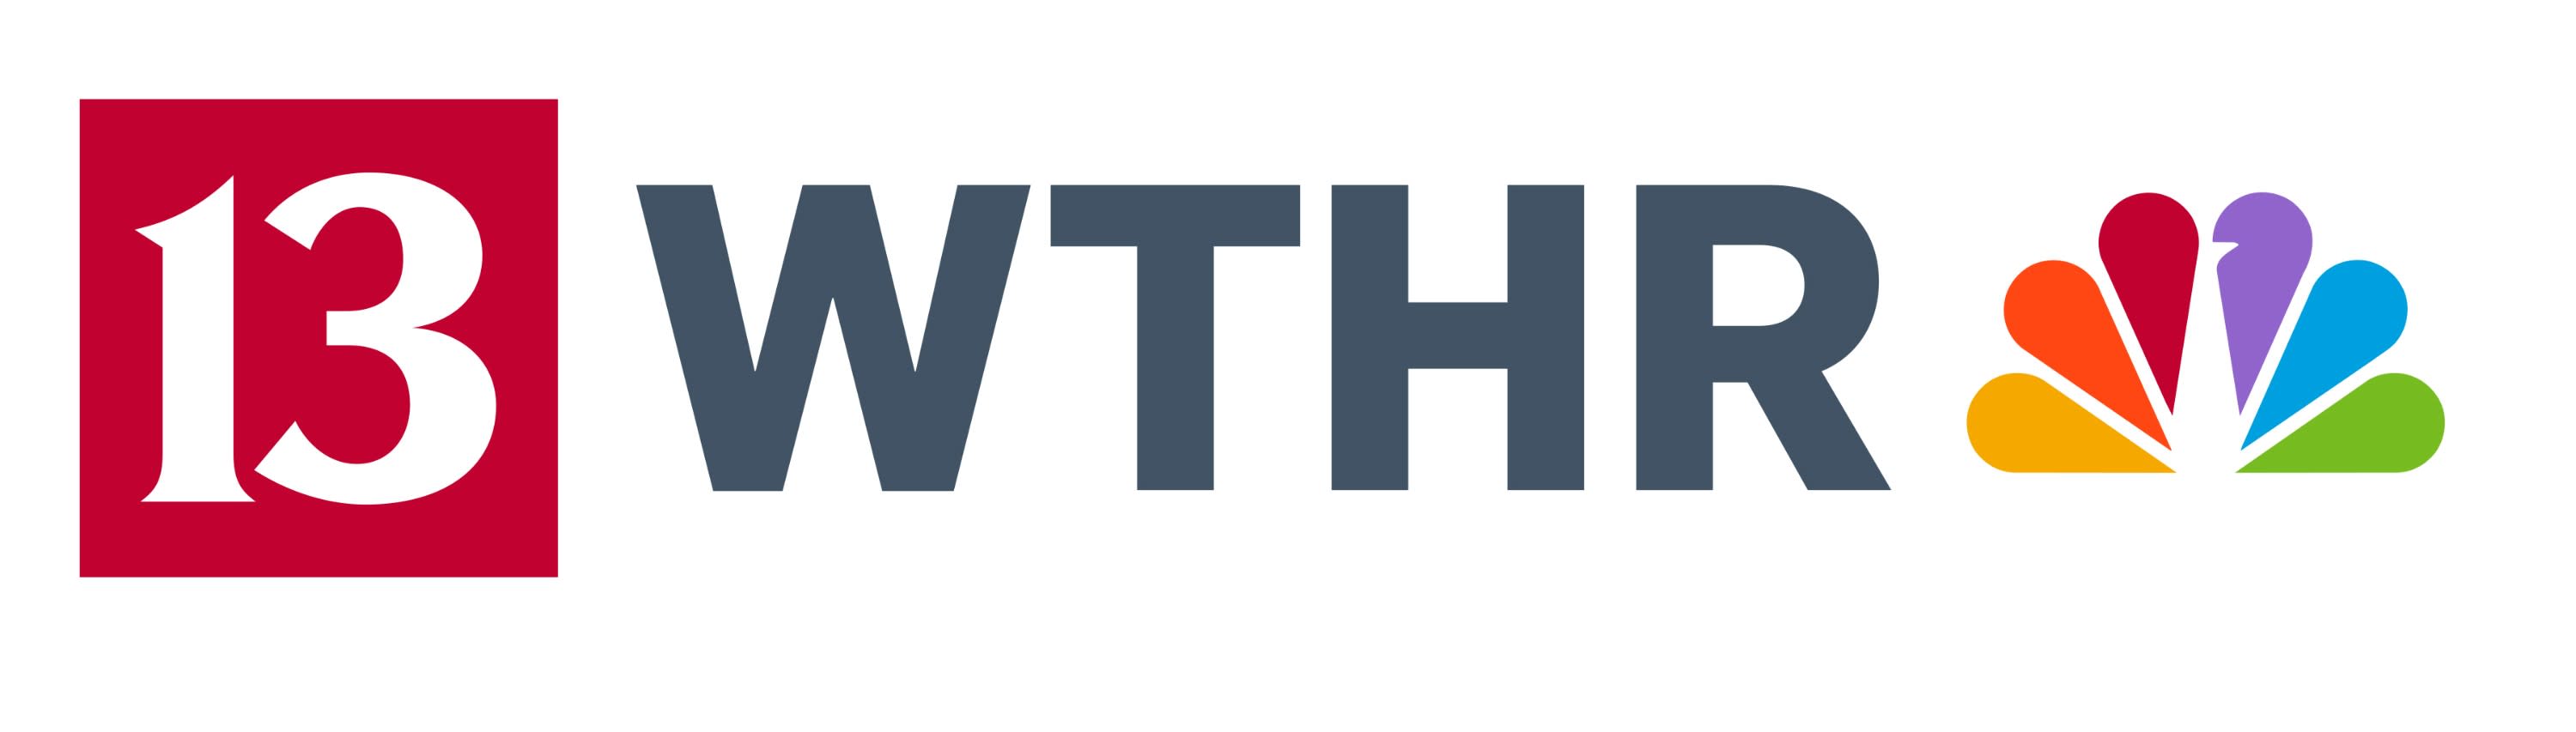 Logo for WTHR 13 (TV)